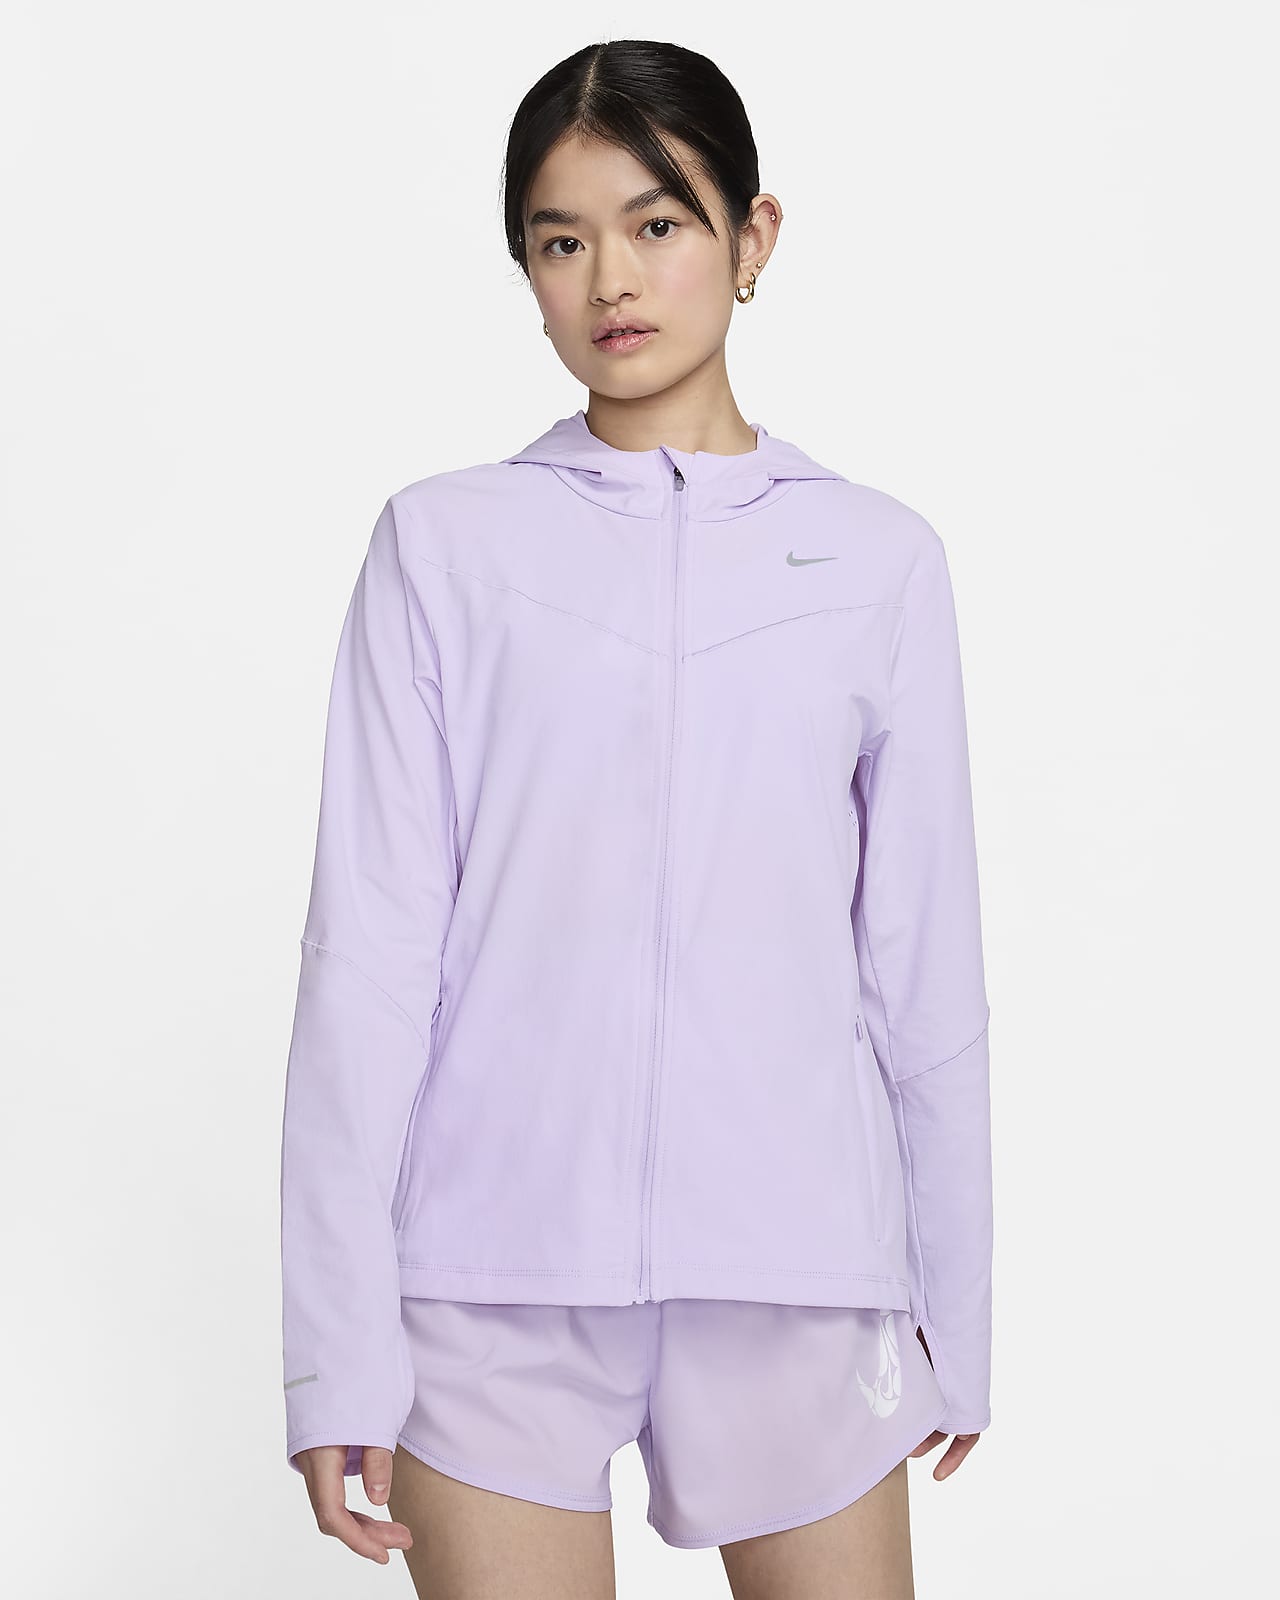 เสื้อแจ็คเก็ตวิ่งผู้หญิง Nike Swift UV